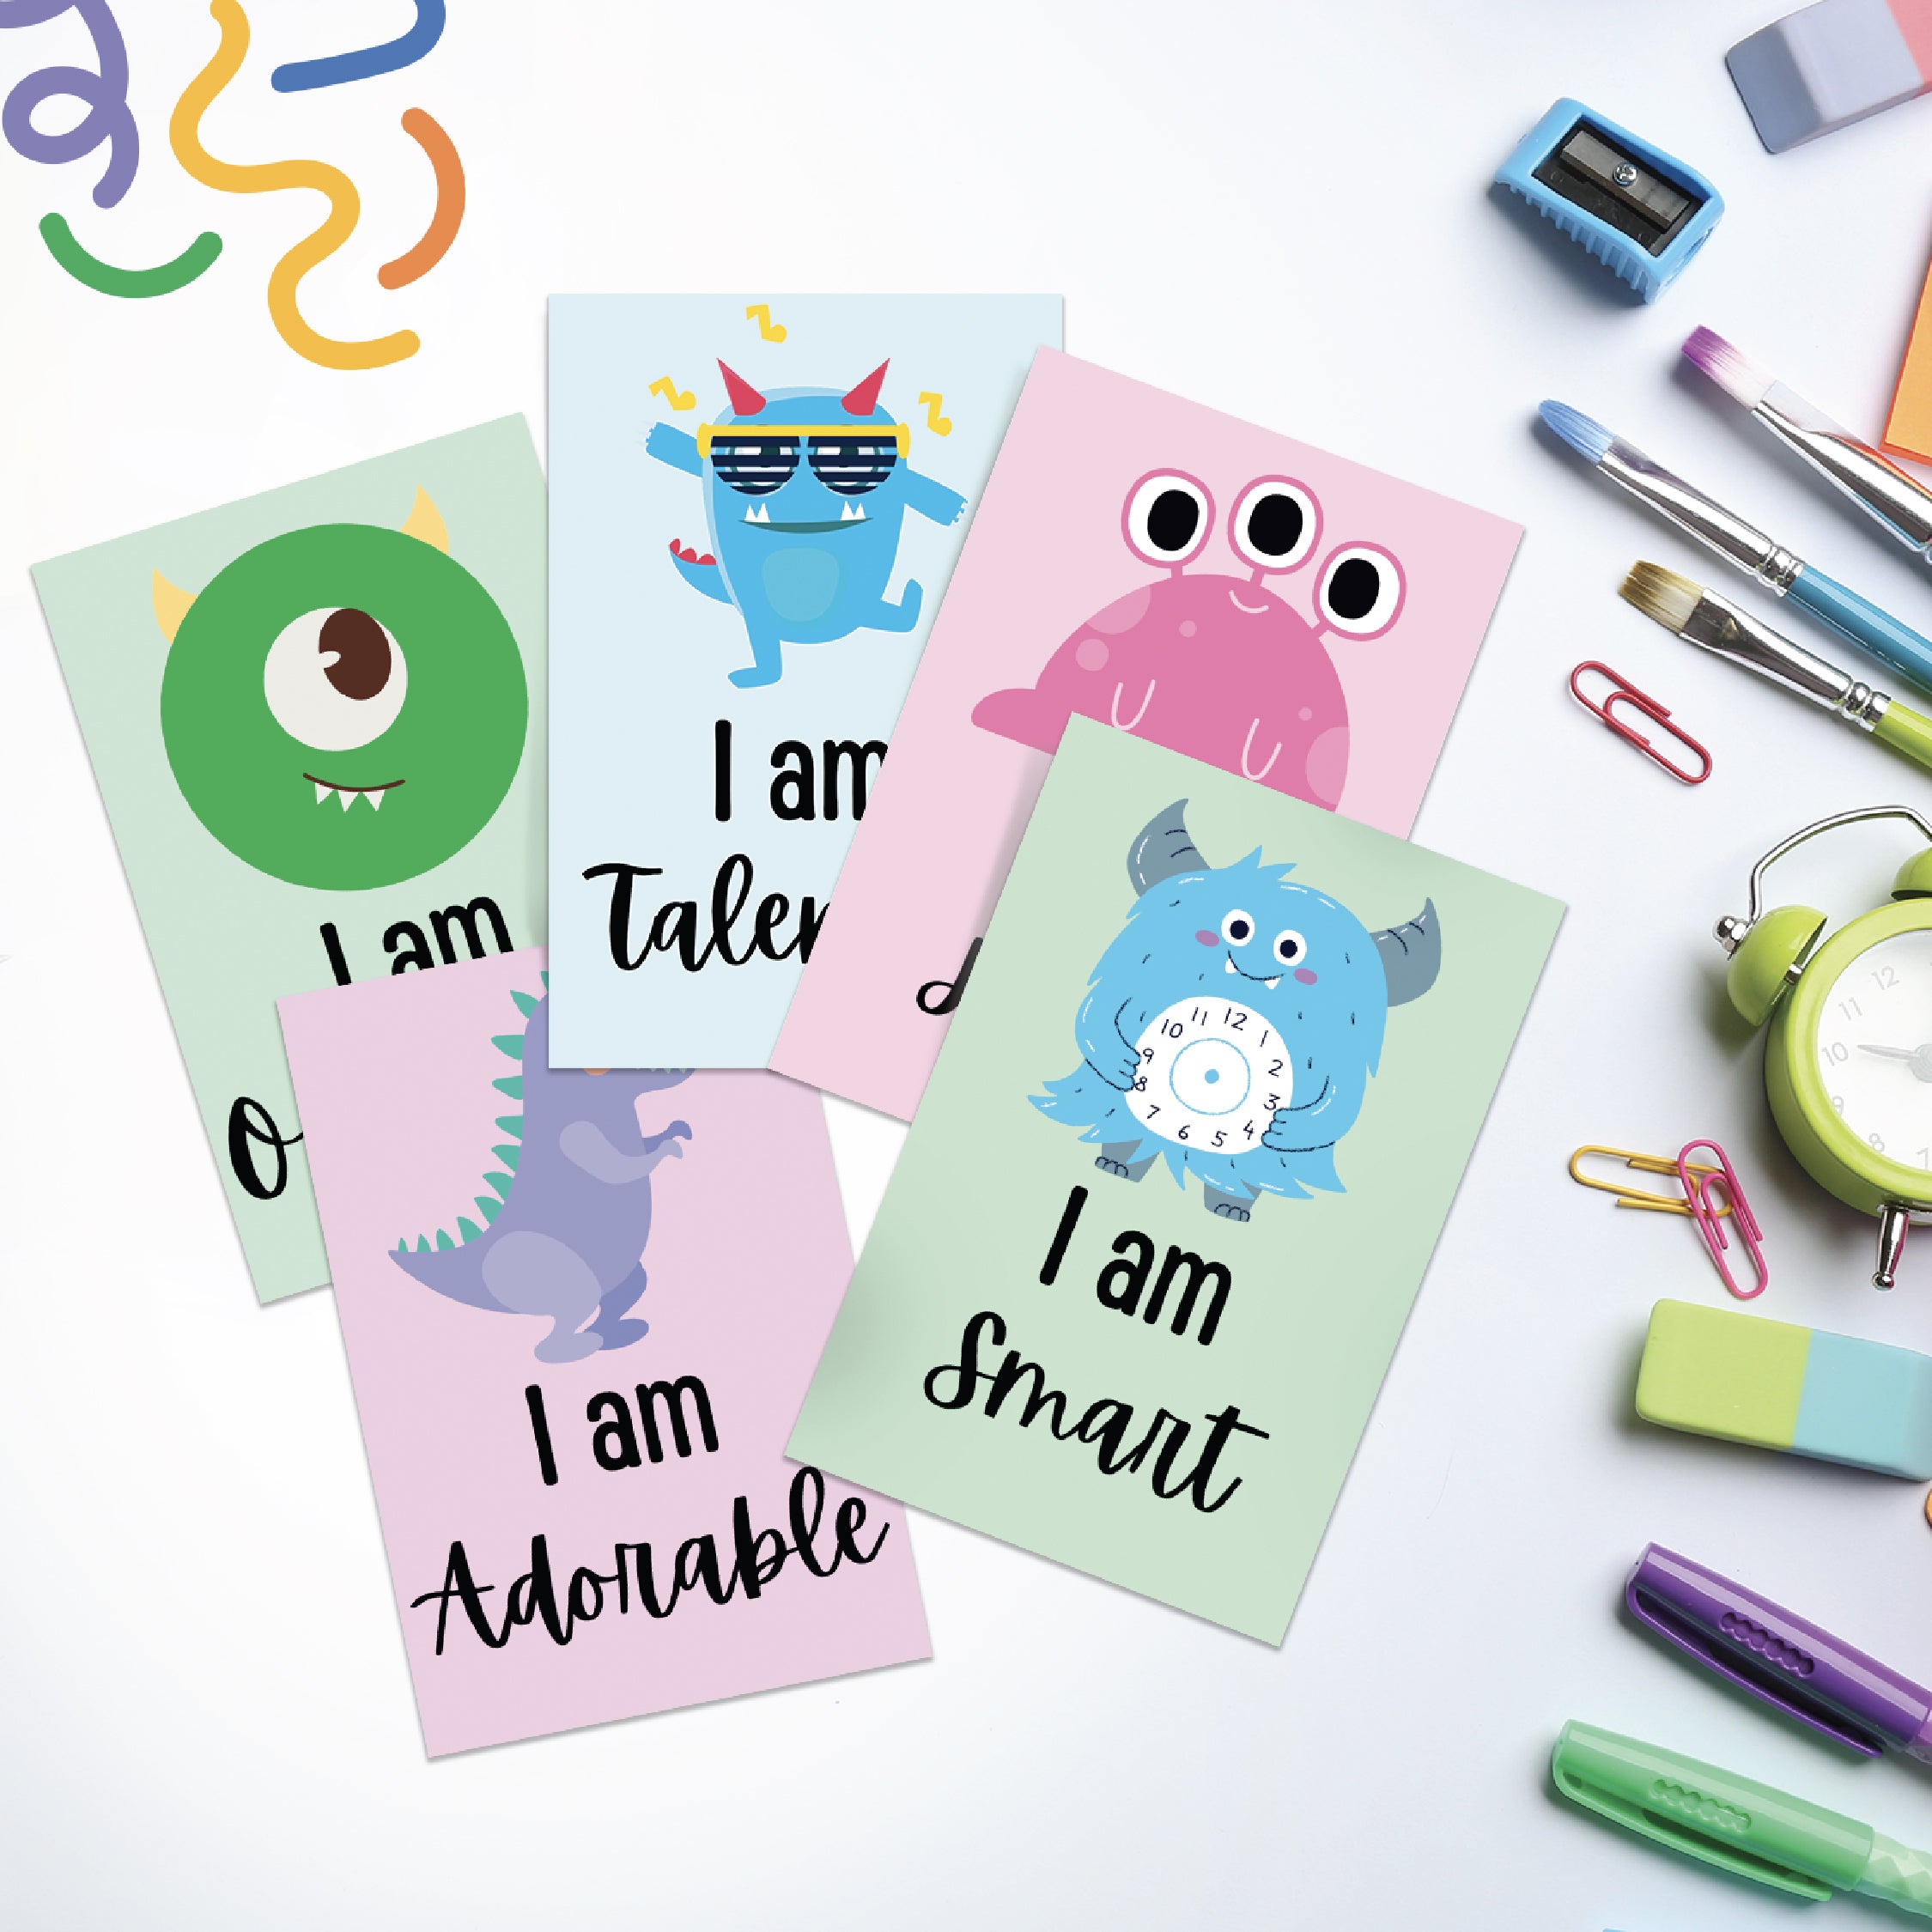 Motivational Cards | Mindfulness For Kids | Positive Affirmation Cards | Affirmation Cards For Kids Printable | Encouragement Kids Cards